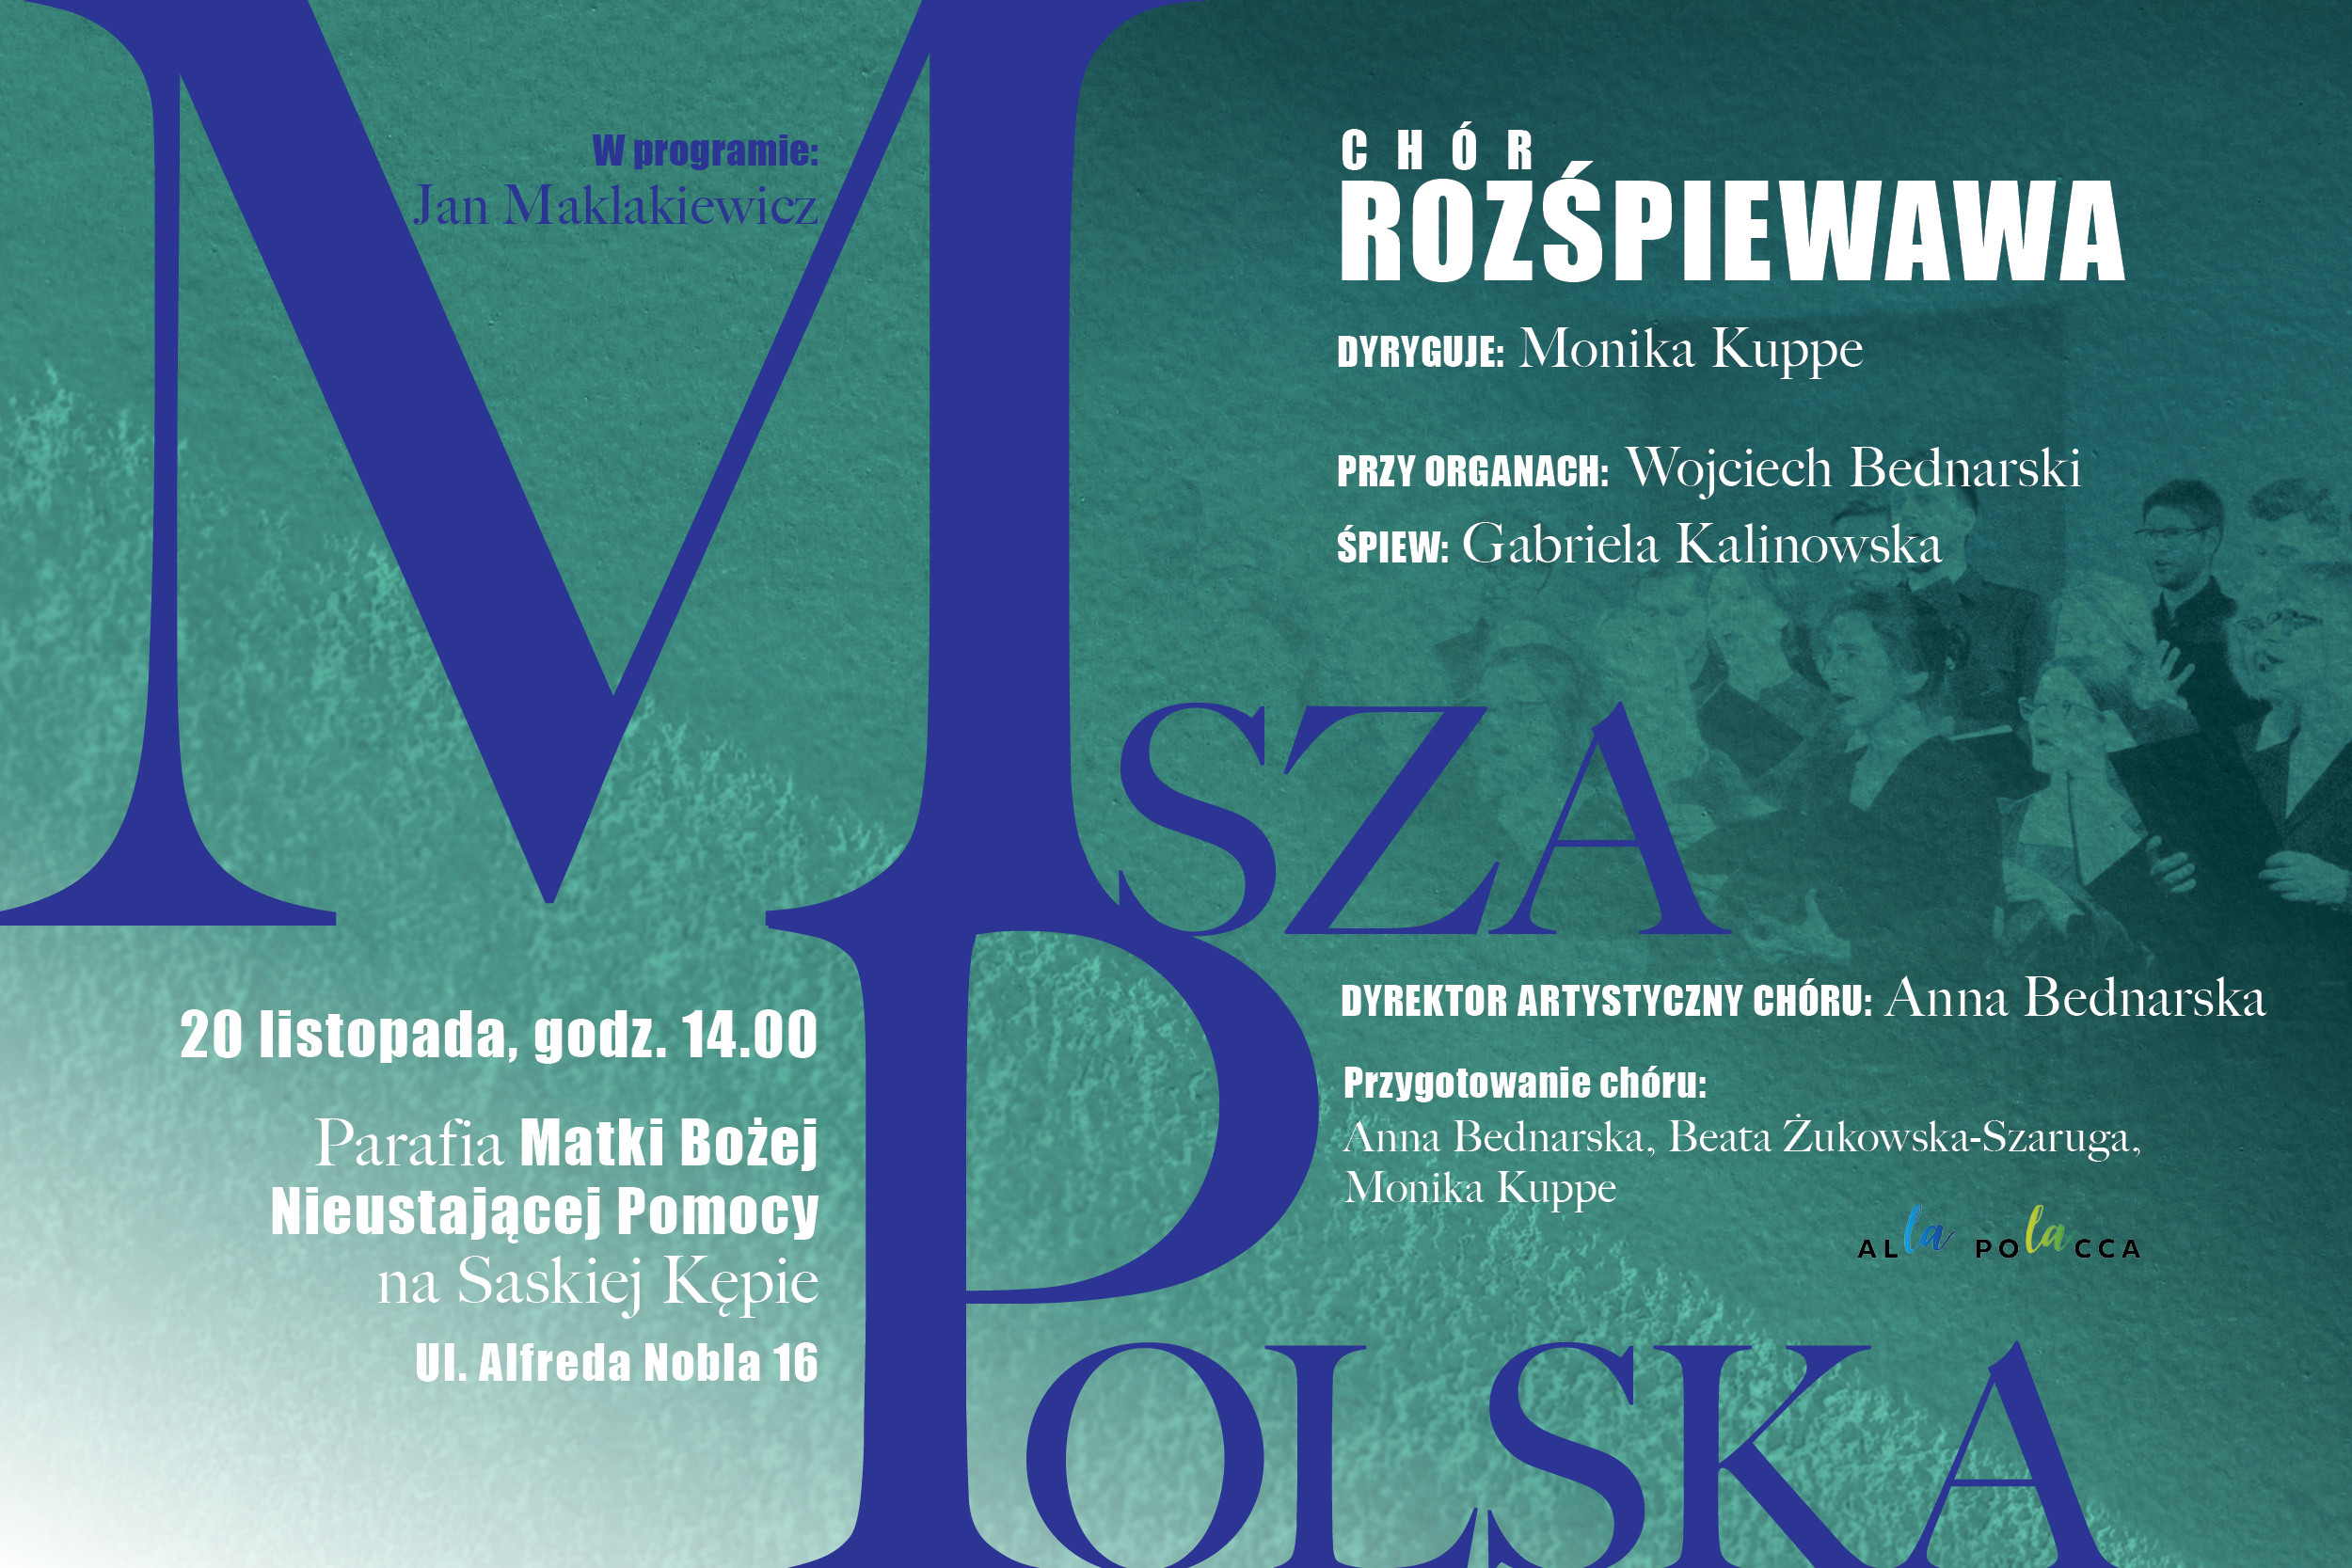 Chór RozśpieWawa - "Msza Polska" J. Maklakiewicza - 20.11